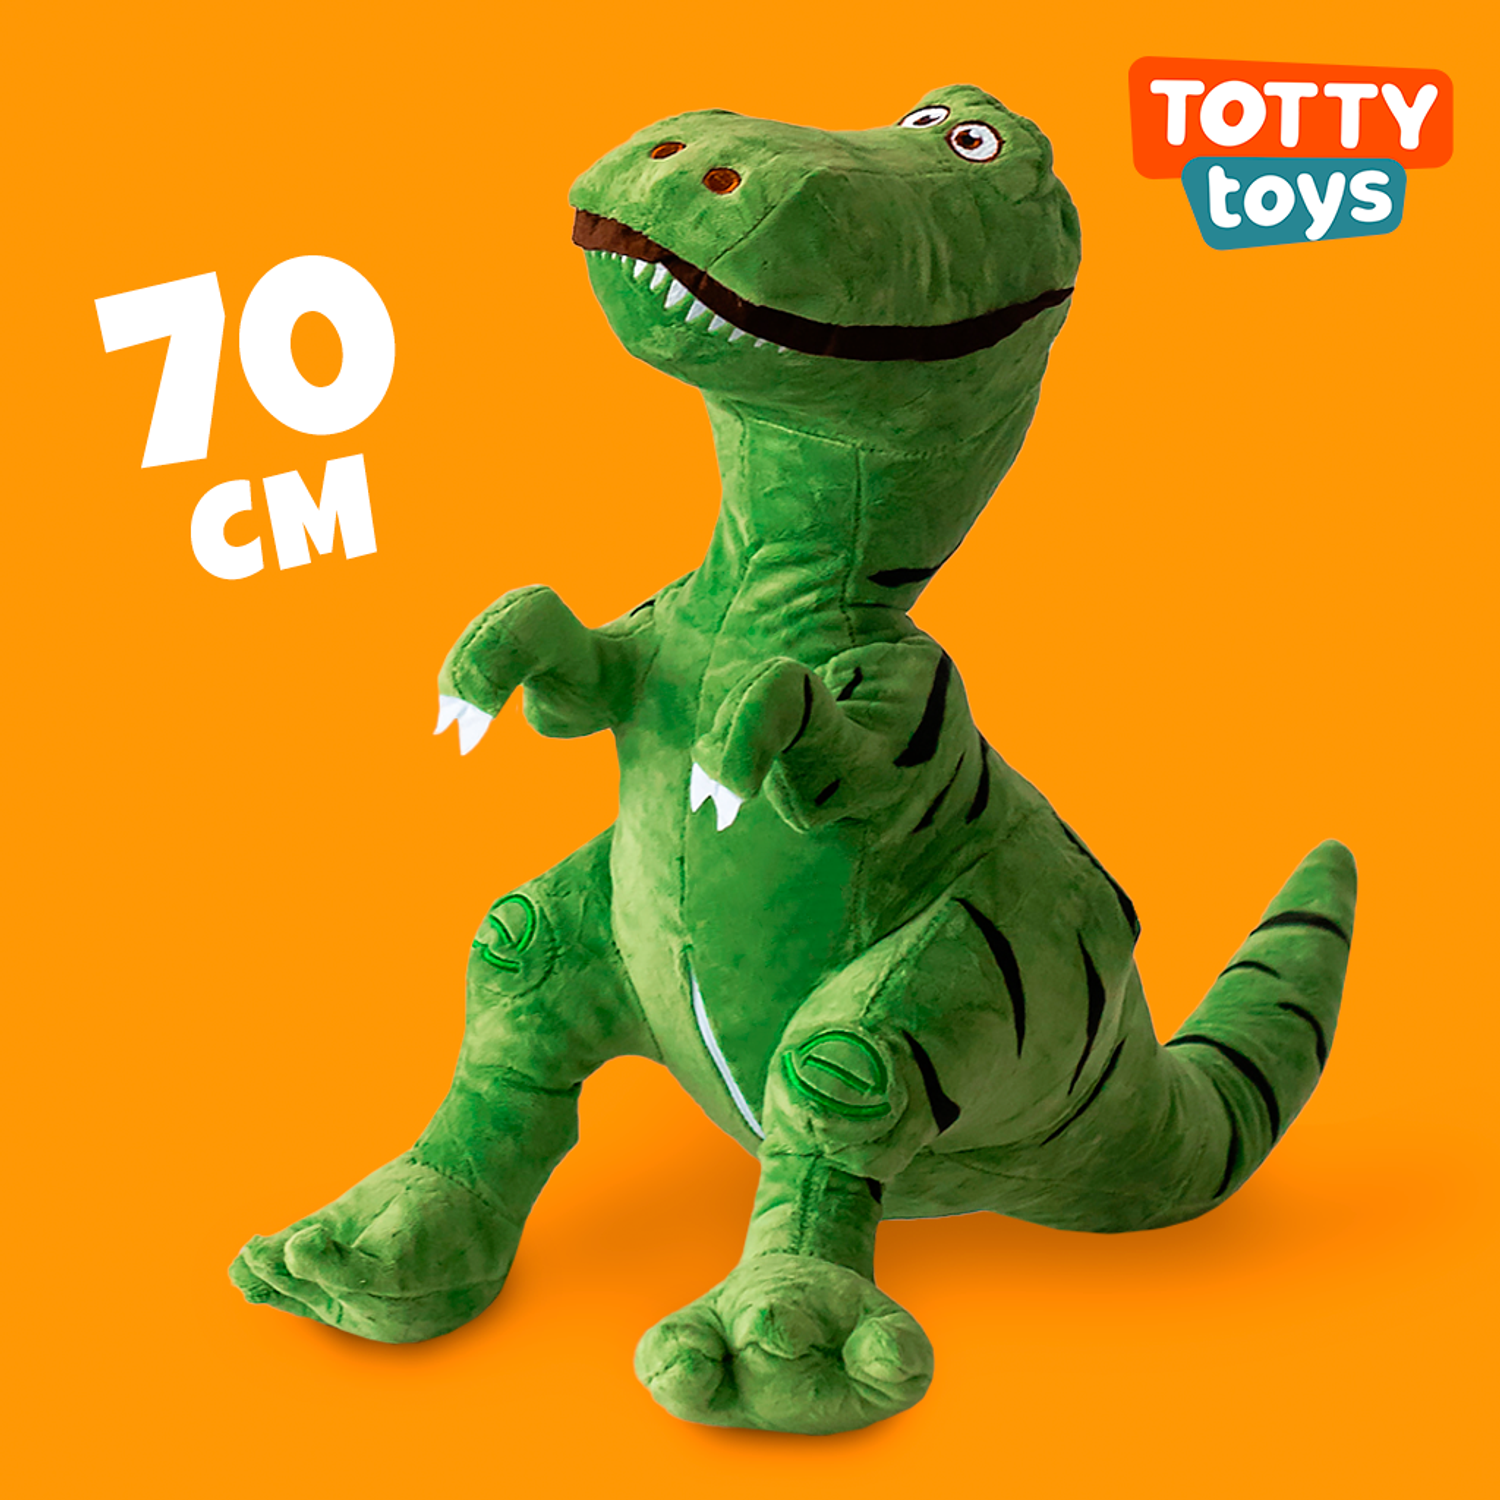 Мягкая игрушка TOTTY TOYS динозавр 70 см антистресс развивающая обнимашка - фото 1